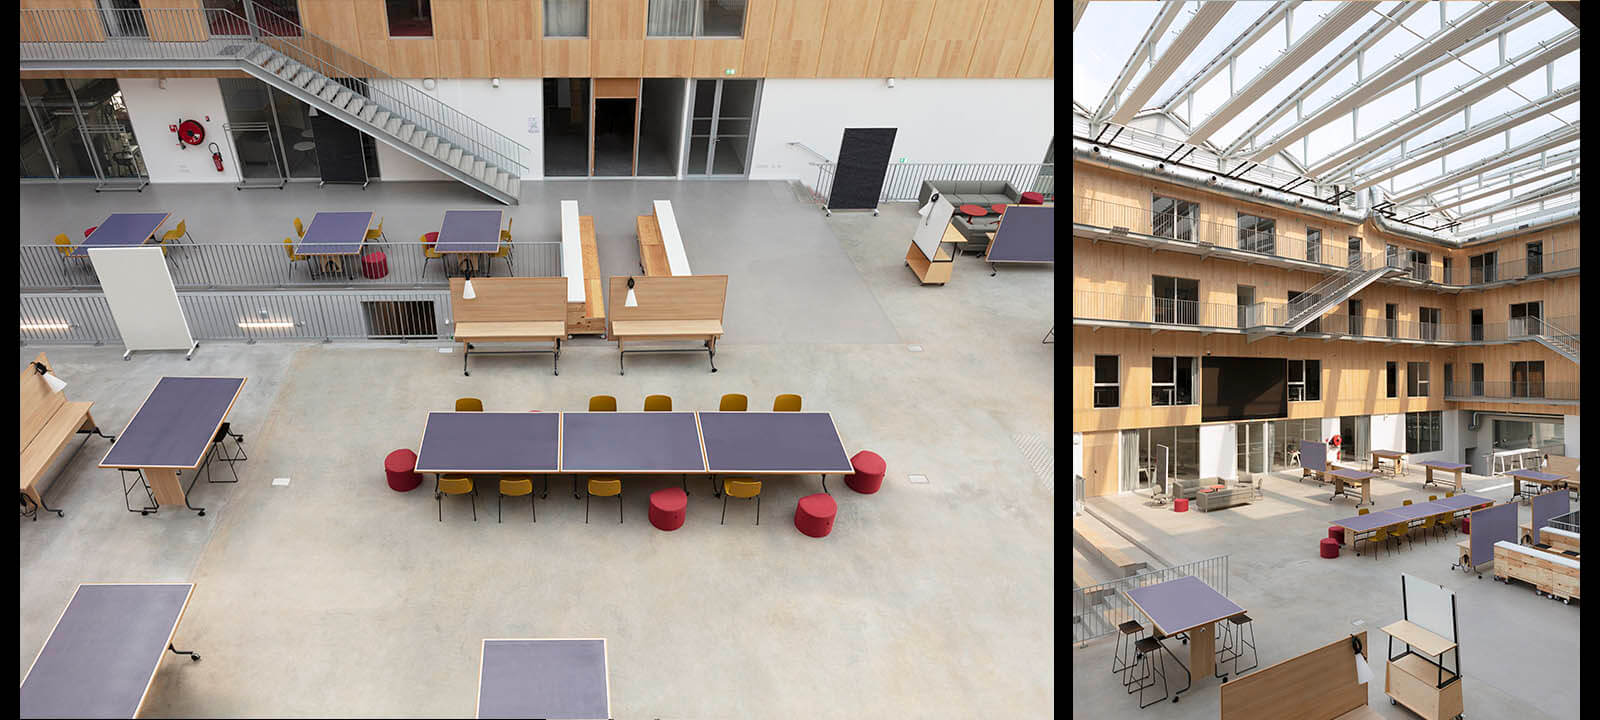 Gwenaelle Hoyet, photographe en architecture de l'espace agora de L'Ecole de design nantes meublé par IDM